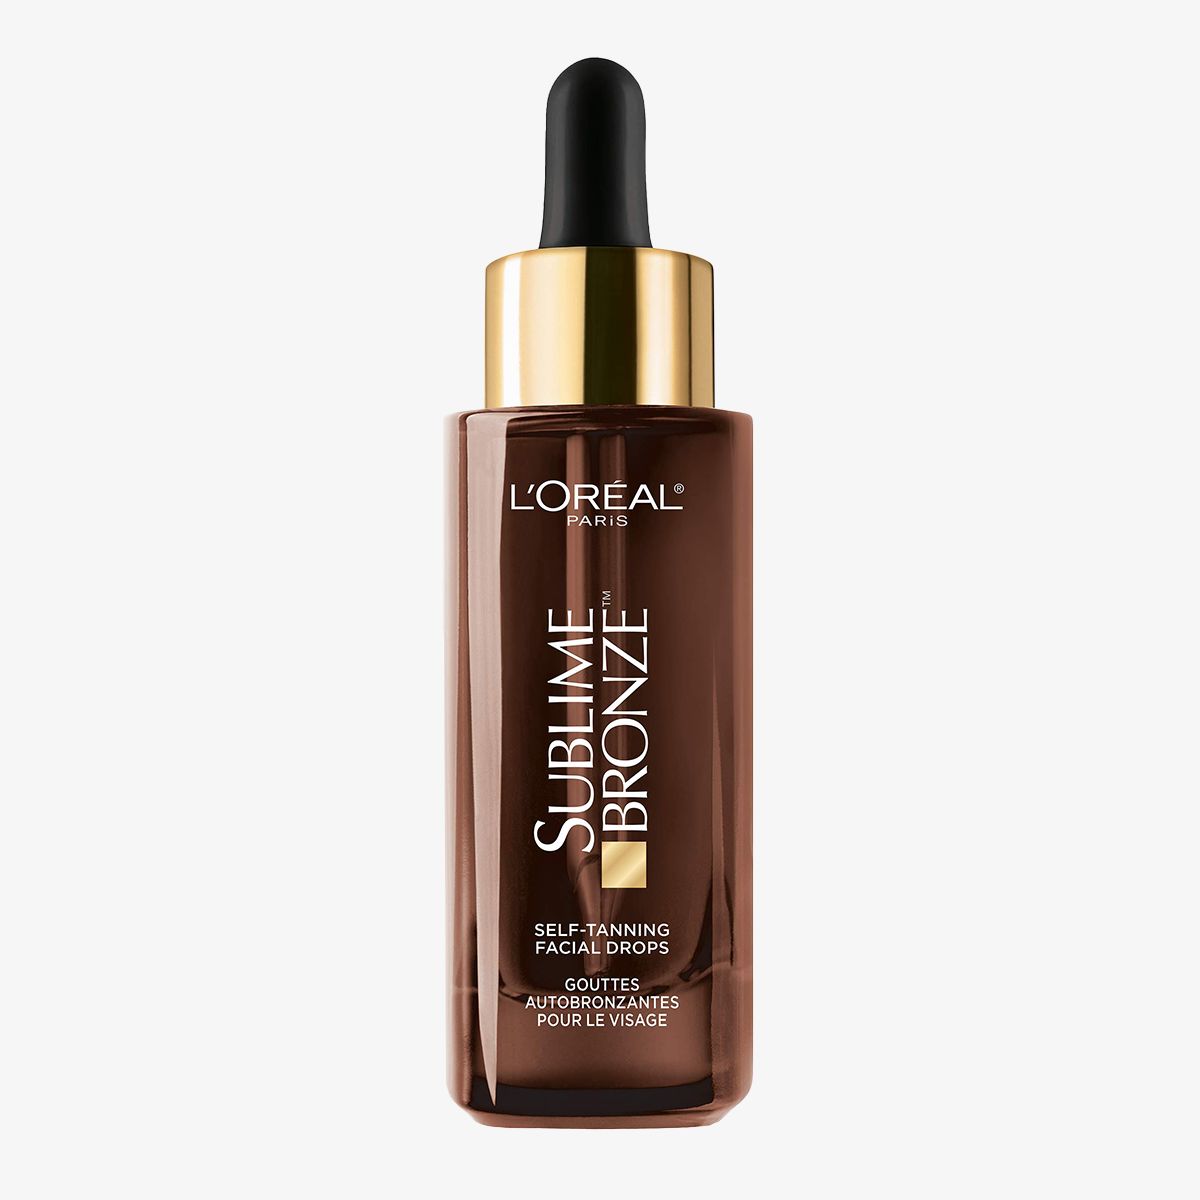 L’Oréal Paris Sublime Bronze Self-Tanning Facial Drops, Fragrance-Free